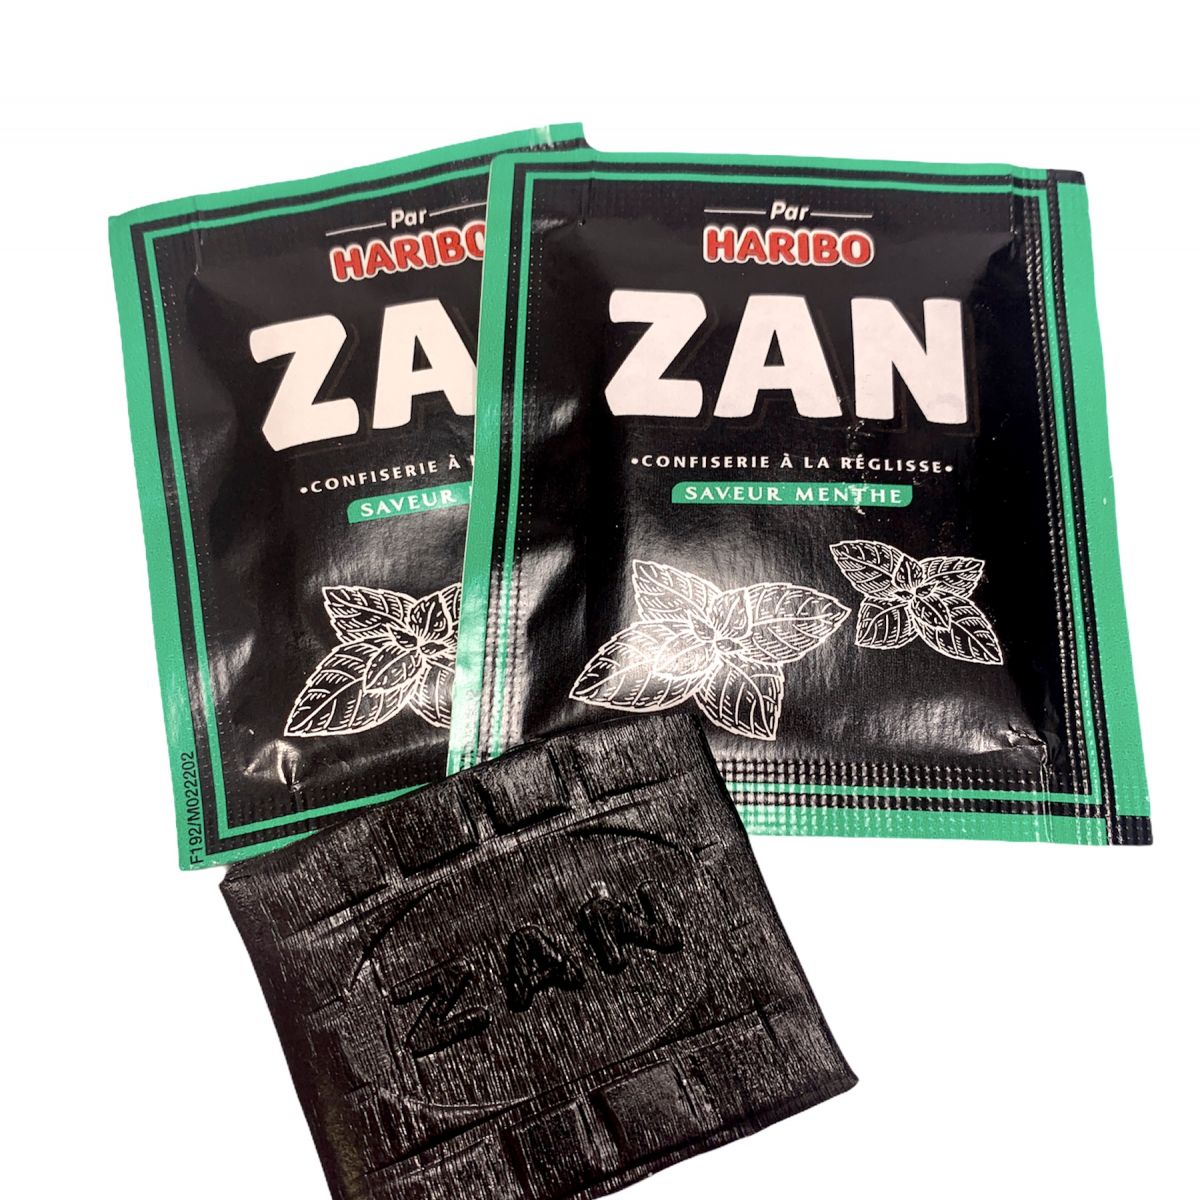 Zan - Pain à la réglisse (goût anis) - bonbon Haribo x3